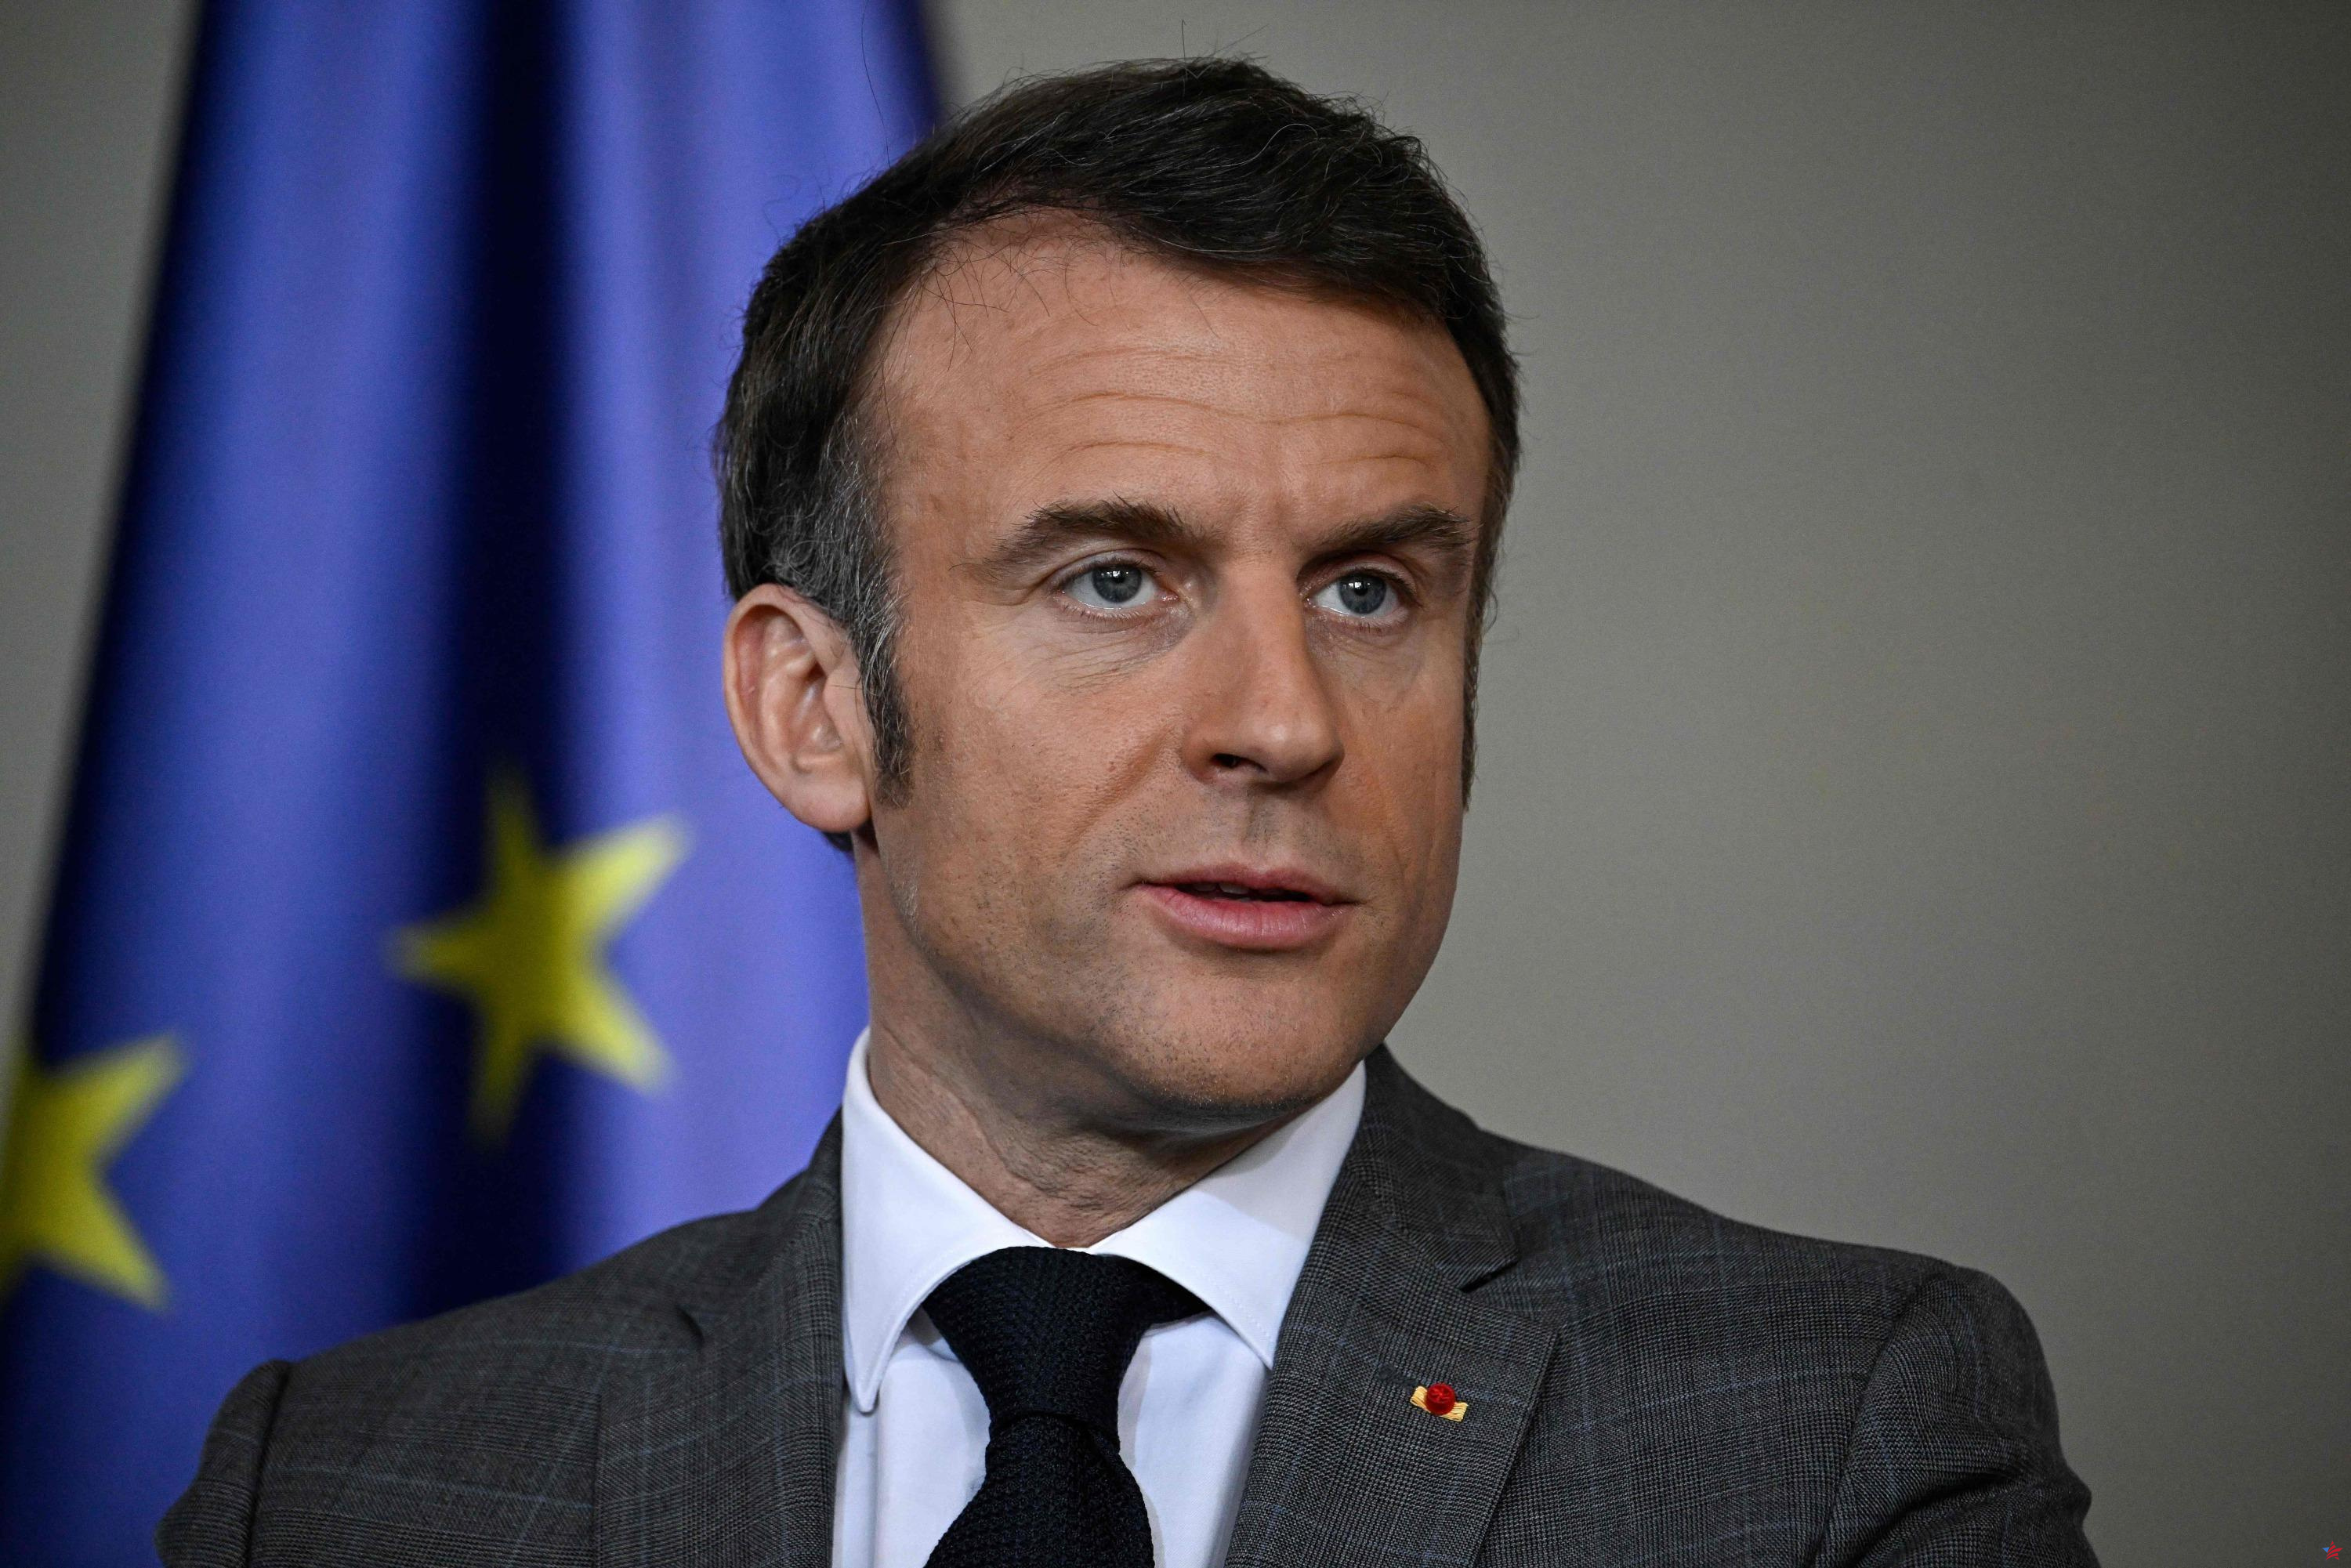 Guerra en Ucrania: “Quizás en algún momento tendremos que realizar operaciones sobre el terreno”, reafirma Macron